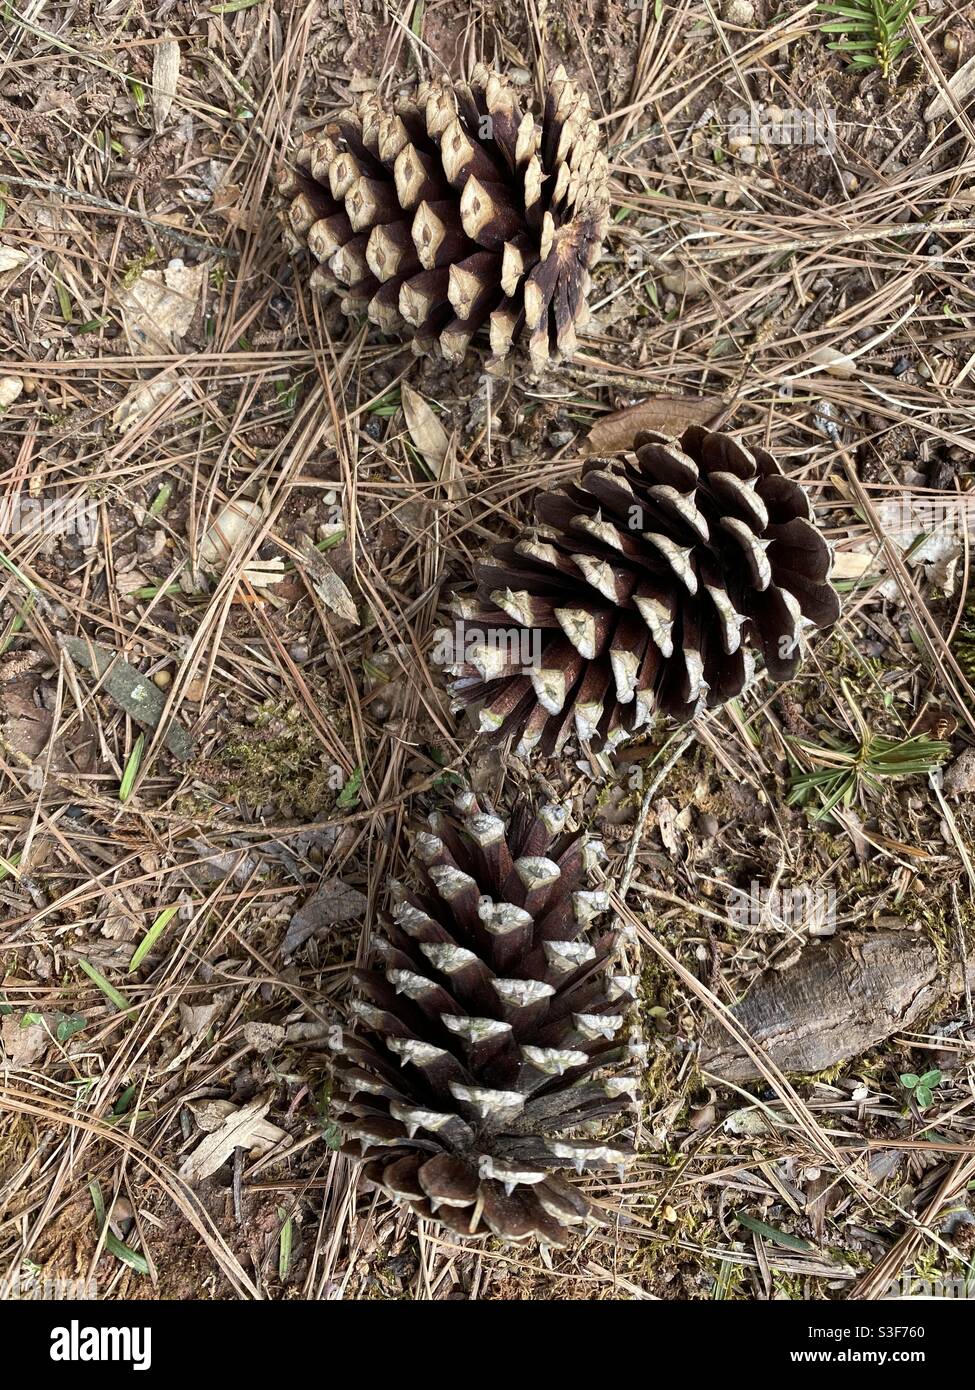 Pine cones and pine needles fallen Stock Photo